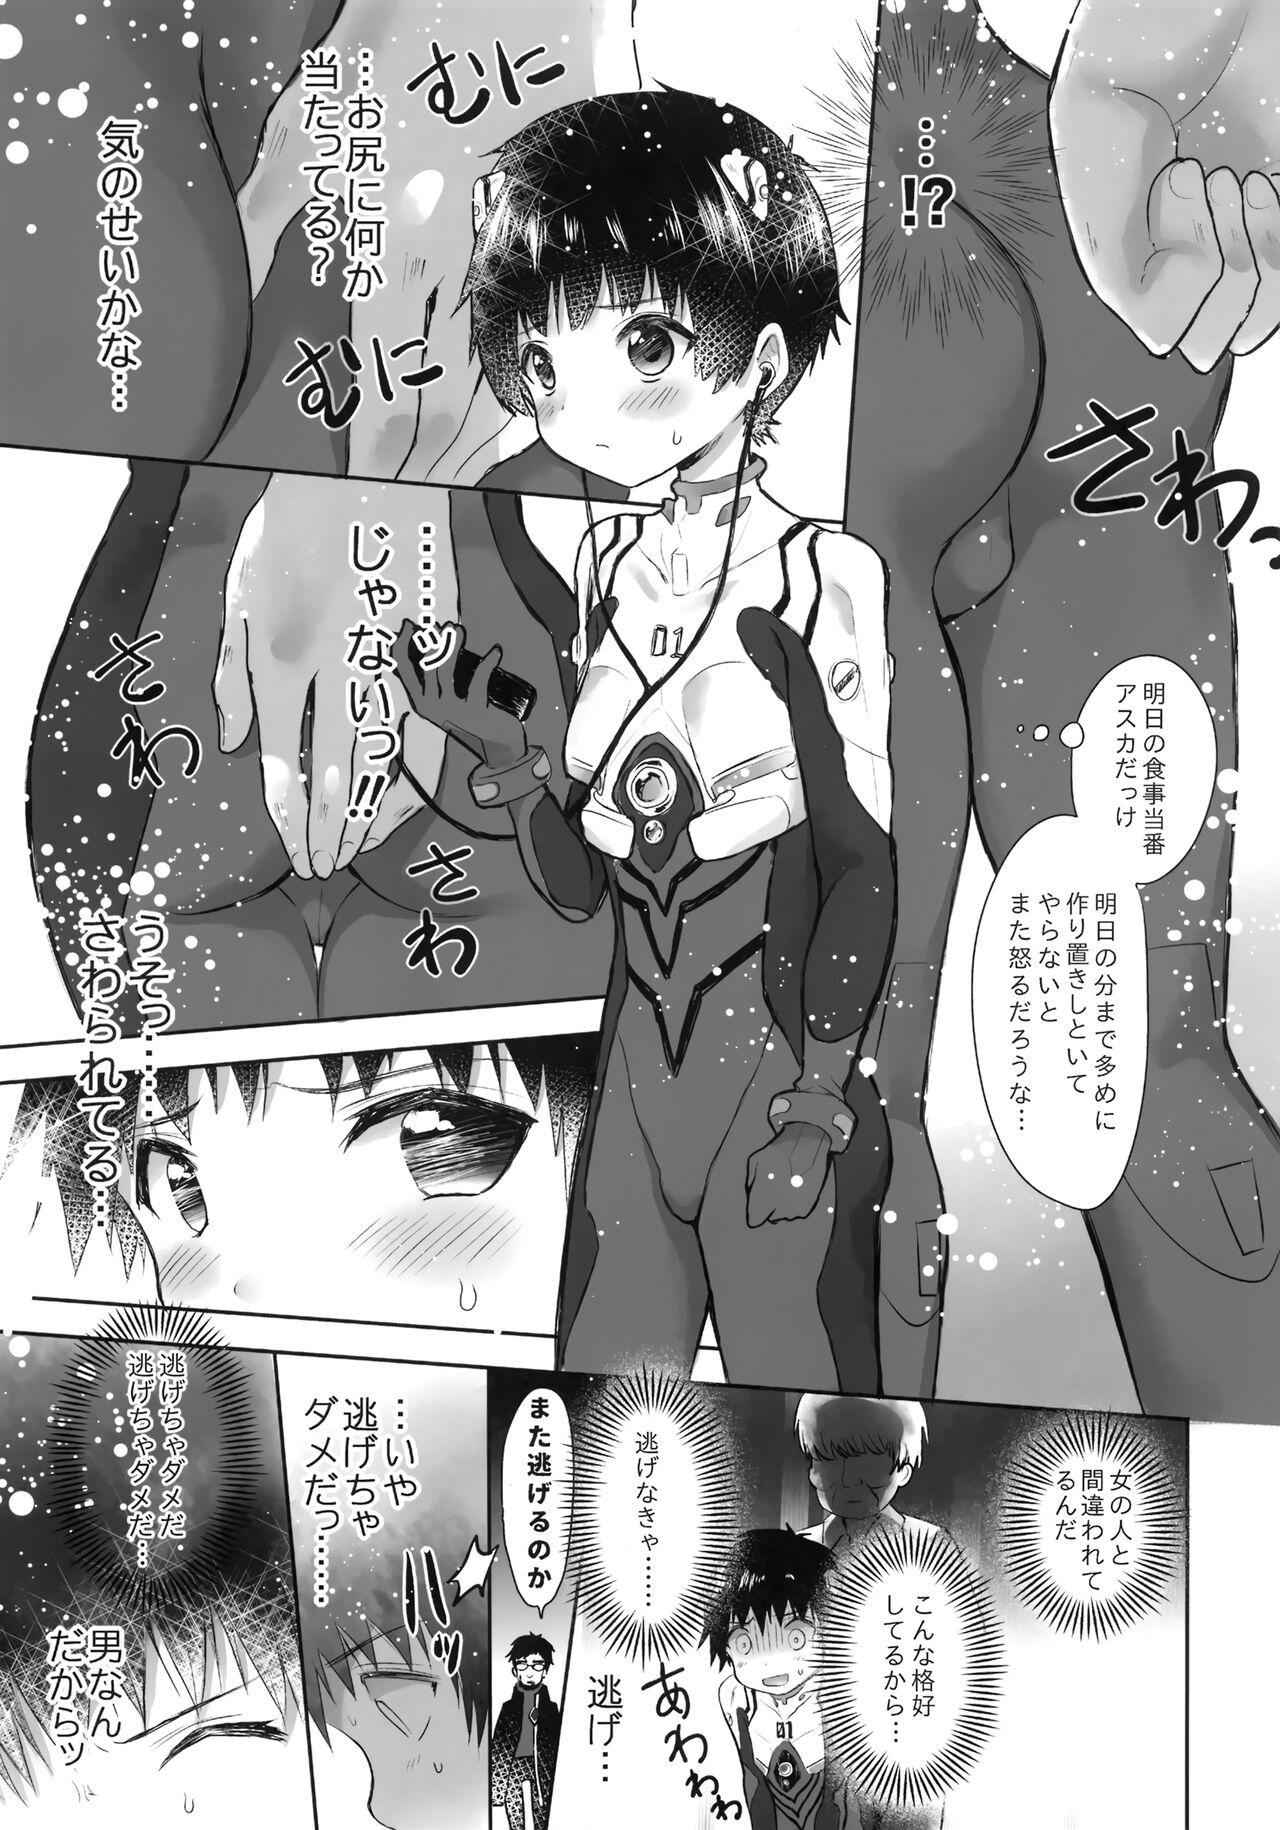 Hardsex Plugsuit o Kita Mama Notte Kure, Shinji. - Neon genesis evangelion Wam - Page 4